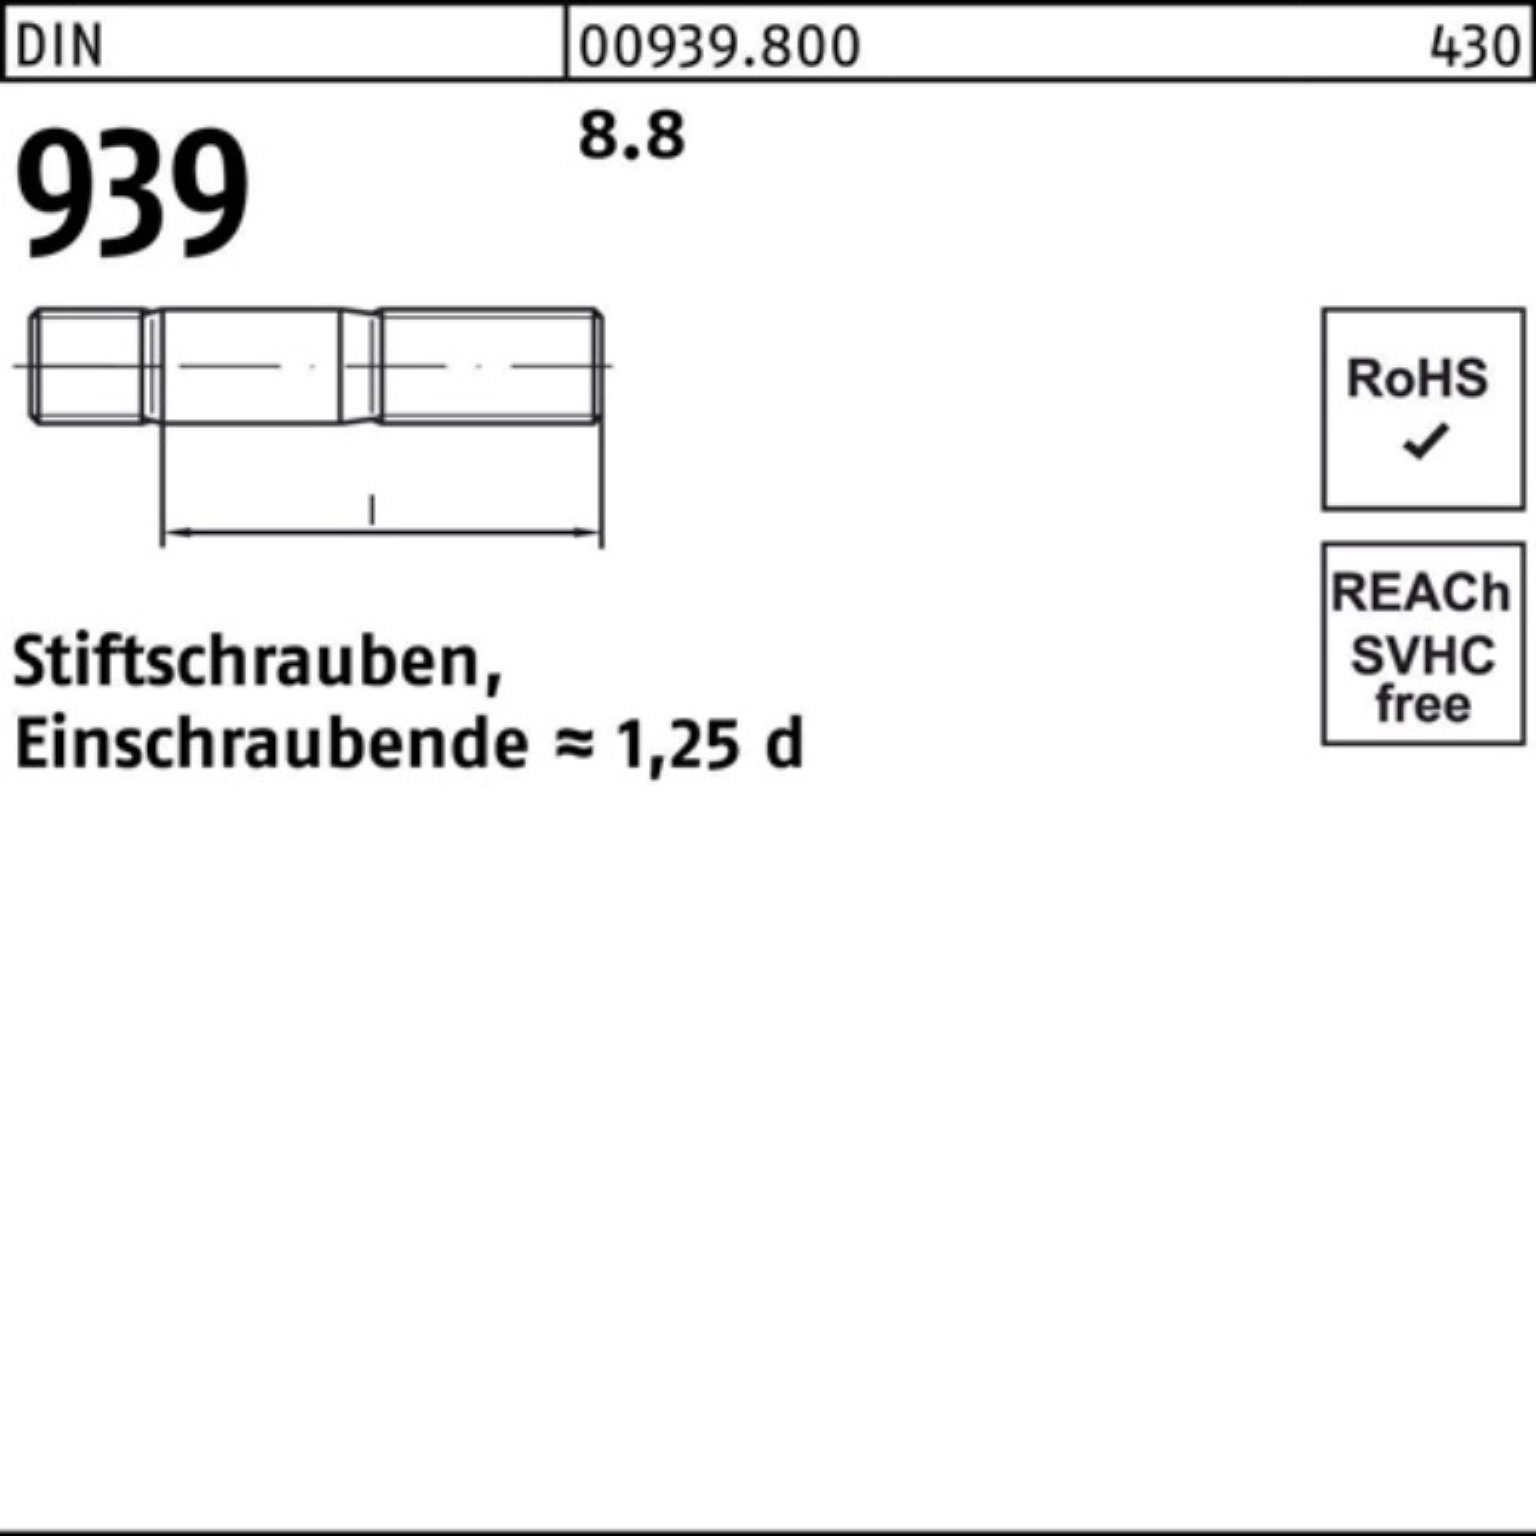 Reyher Stiftschraube 100er Pack 939 25 DIN M12x 8.8 65 S Stiftschraube Einschraubende=1,25d